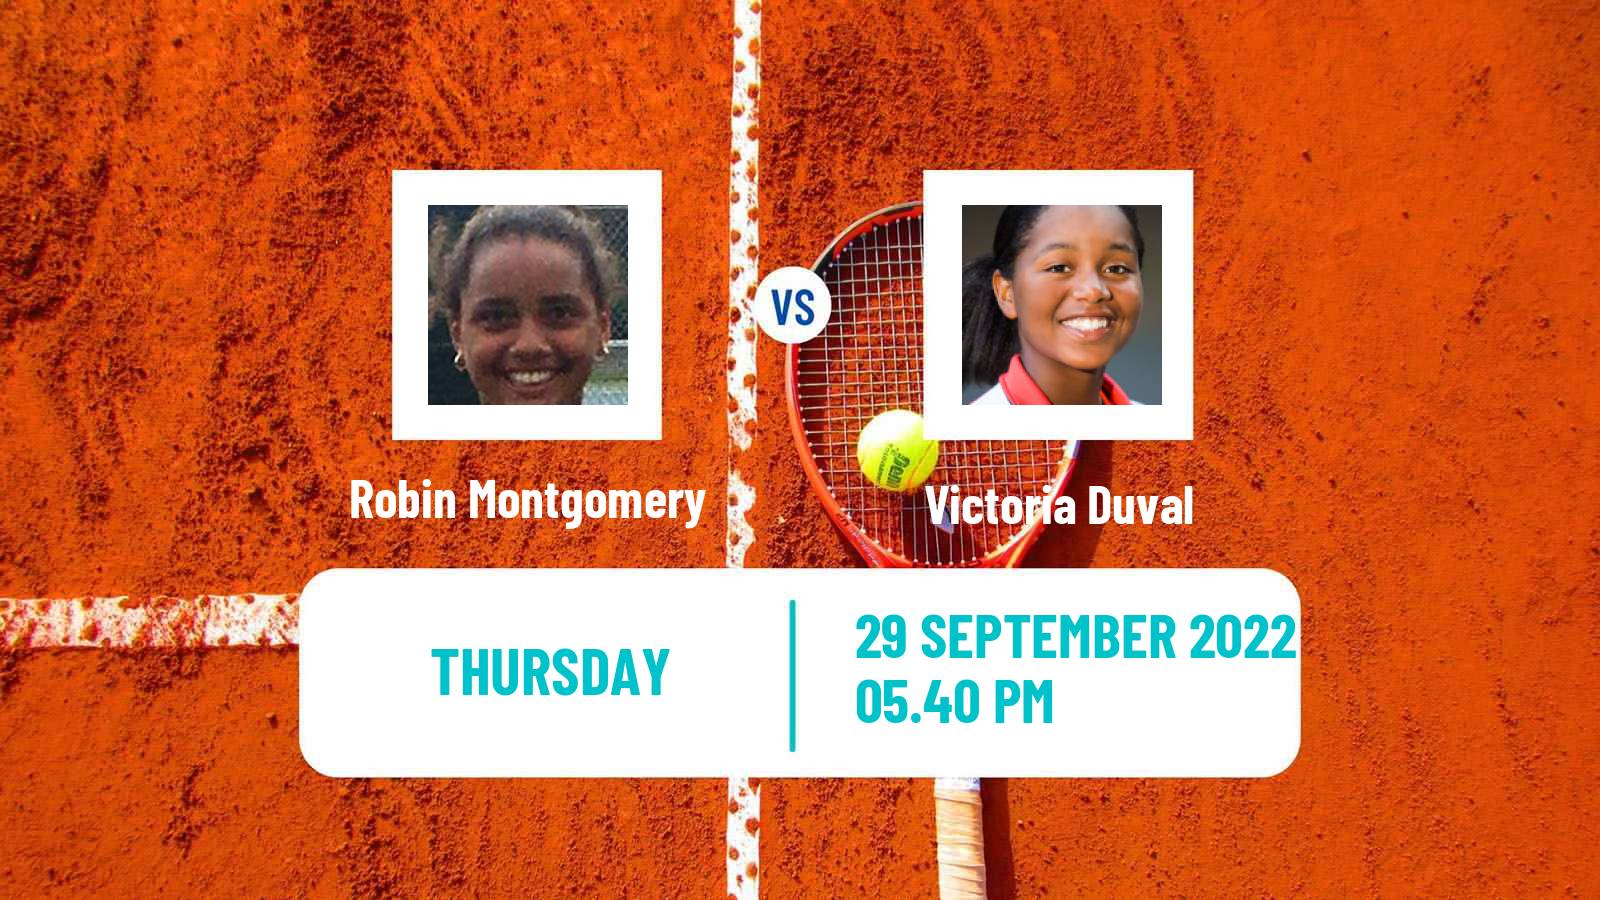 Tennis ITF Tournaments Robin Montgomery - Victoria Duval